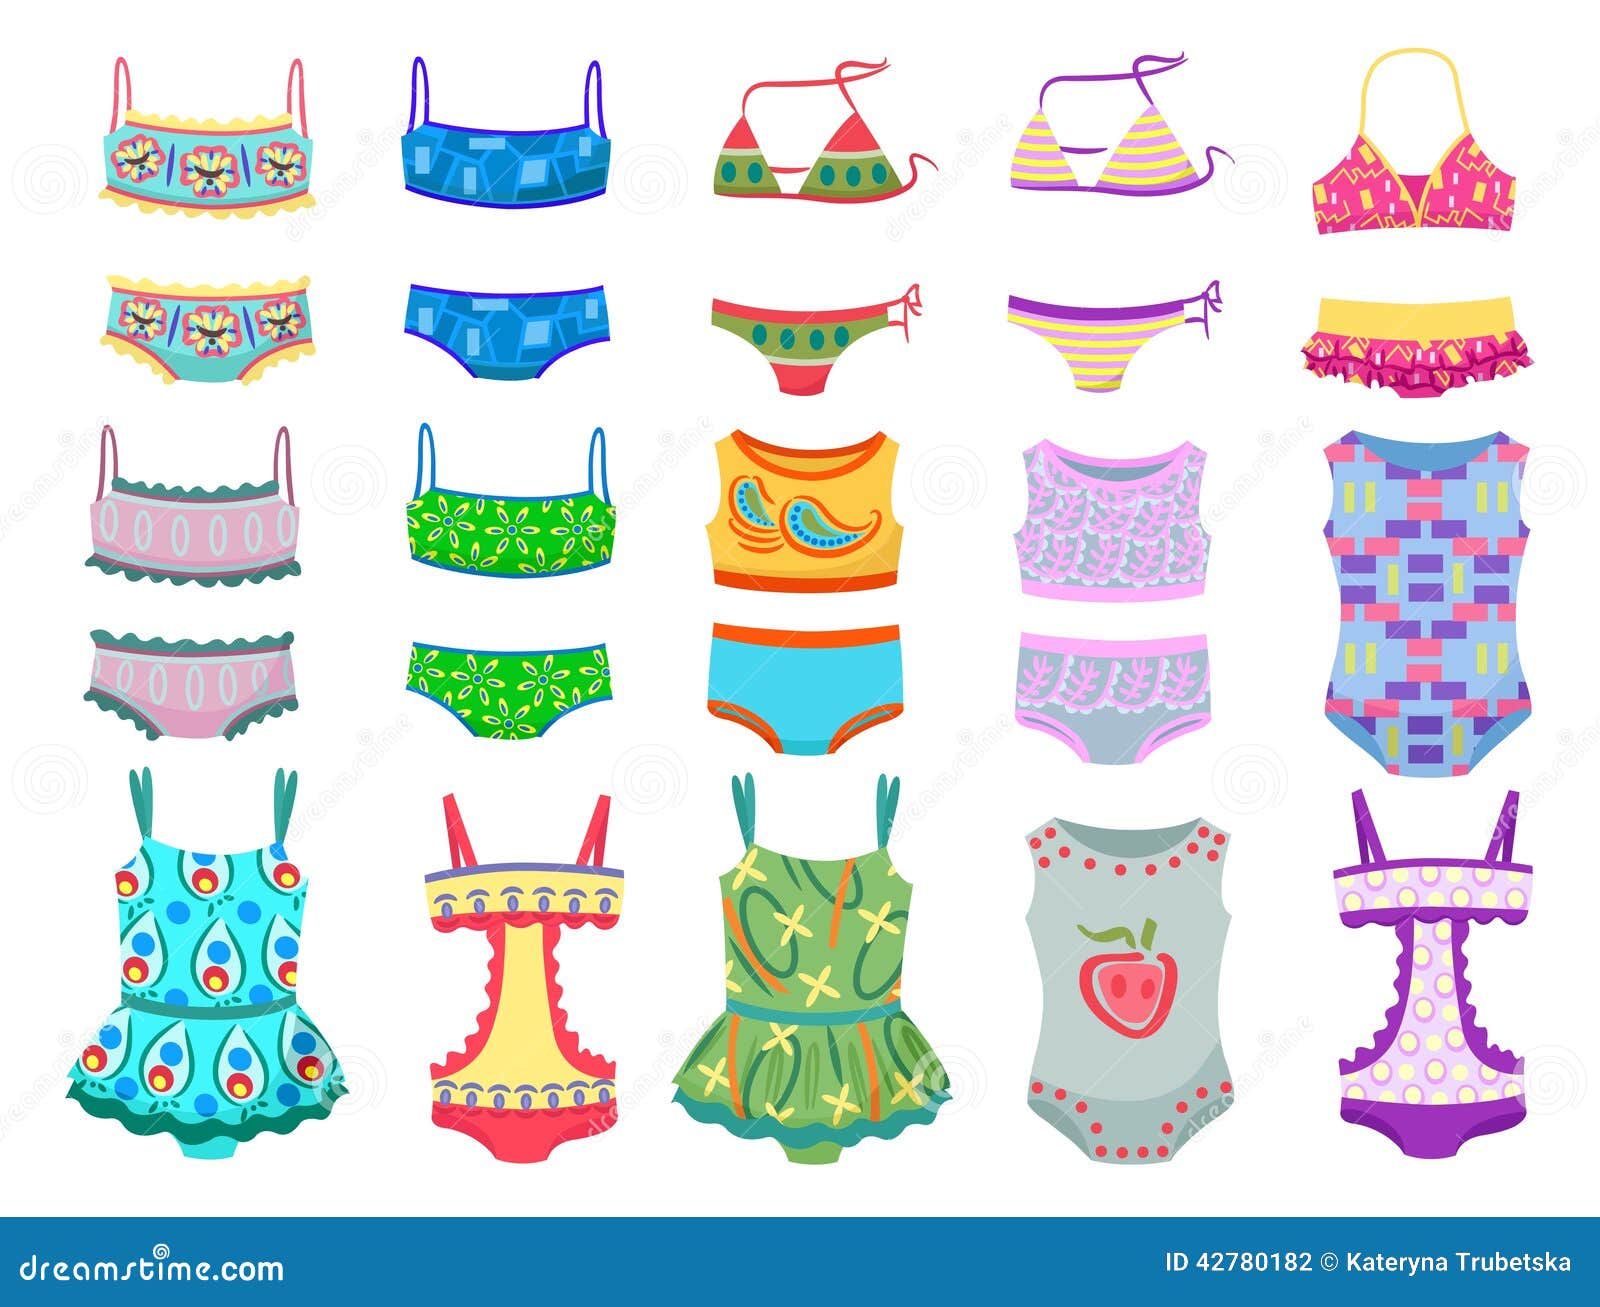 Swimwears for little girls stock vector. Illustration of isolated ...